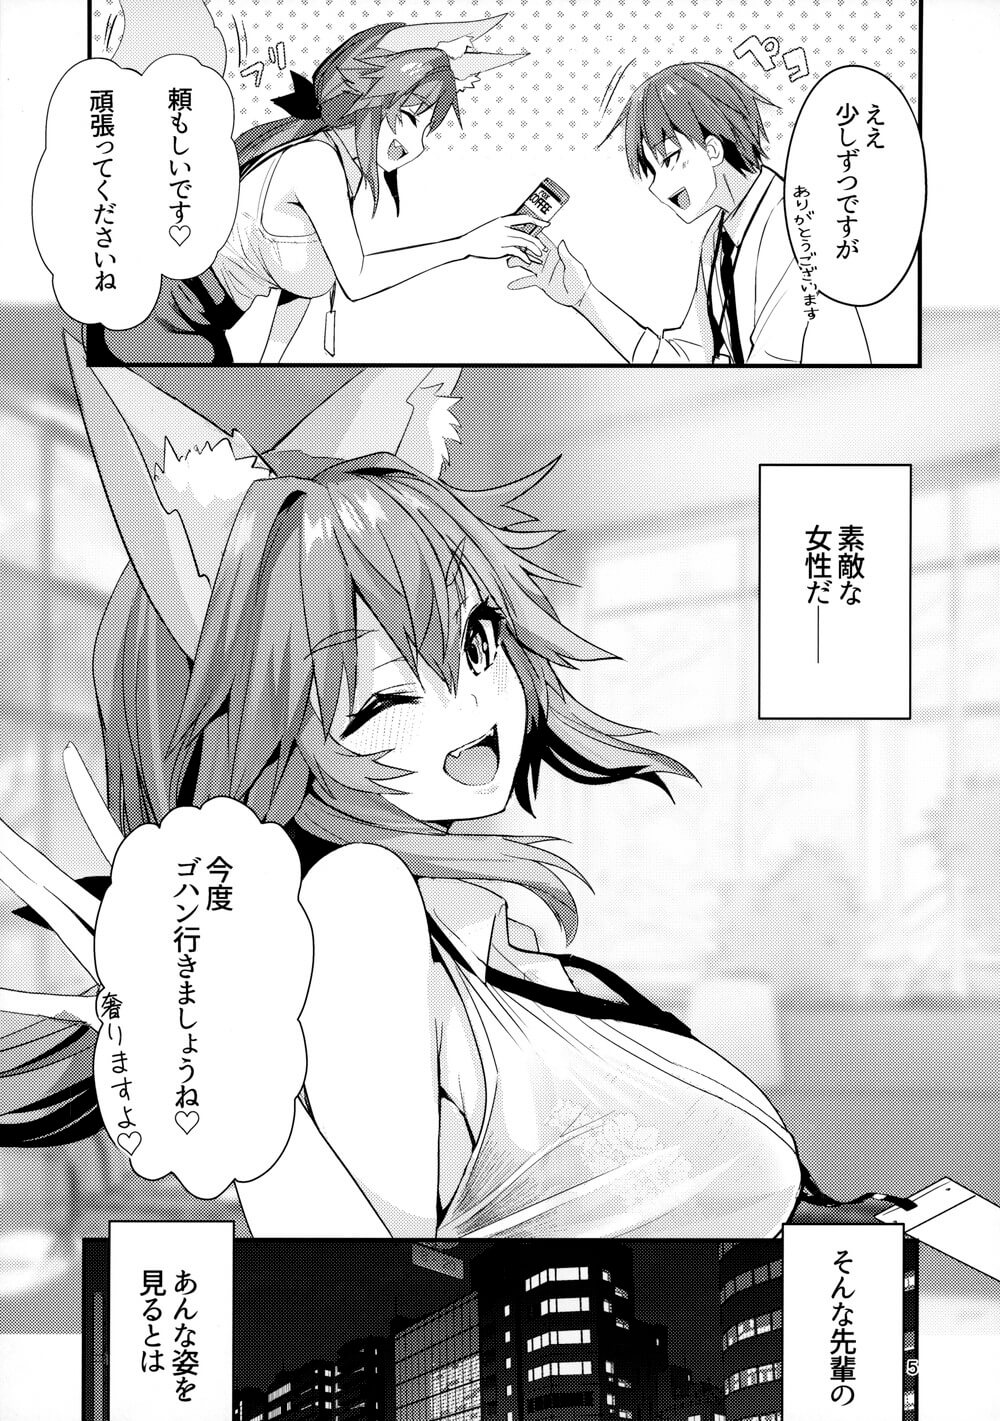 【Fate/EXTRA エロ同人】ご主人様が良く眠れるようにキャス狐が添い寝して巨乳パイズリして抜いてくれます。【無料 エロ漫画】